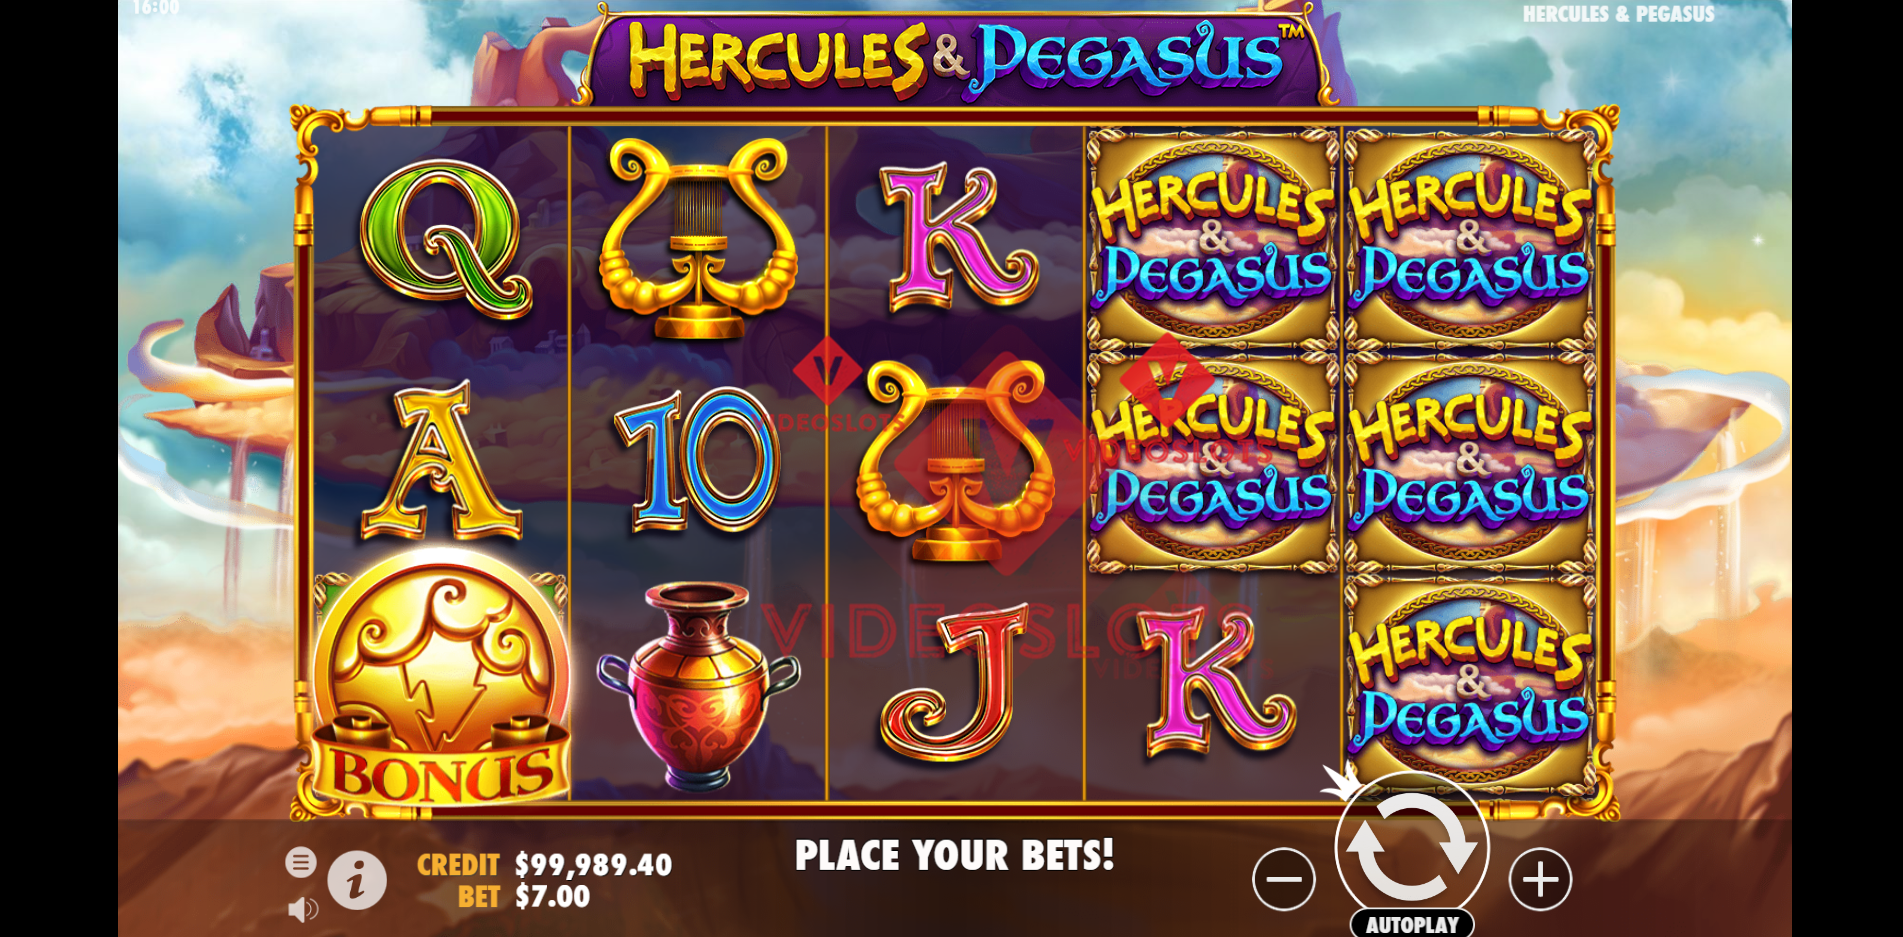 Base Game for Hercules and Pegasus slot by Pragmatic Play